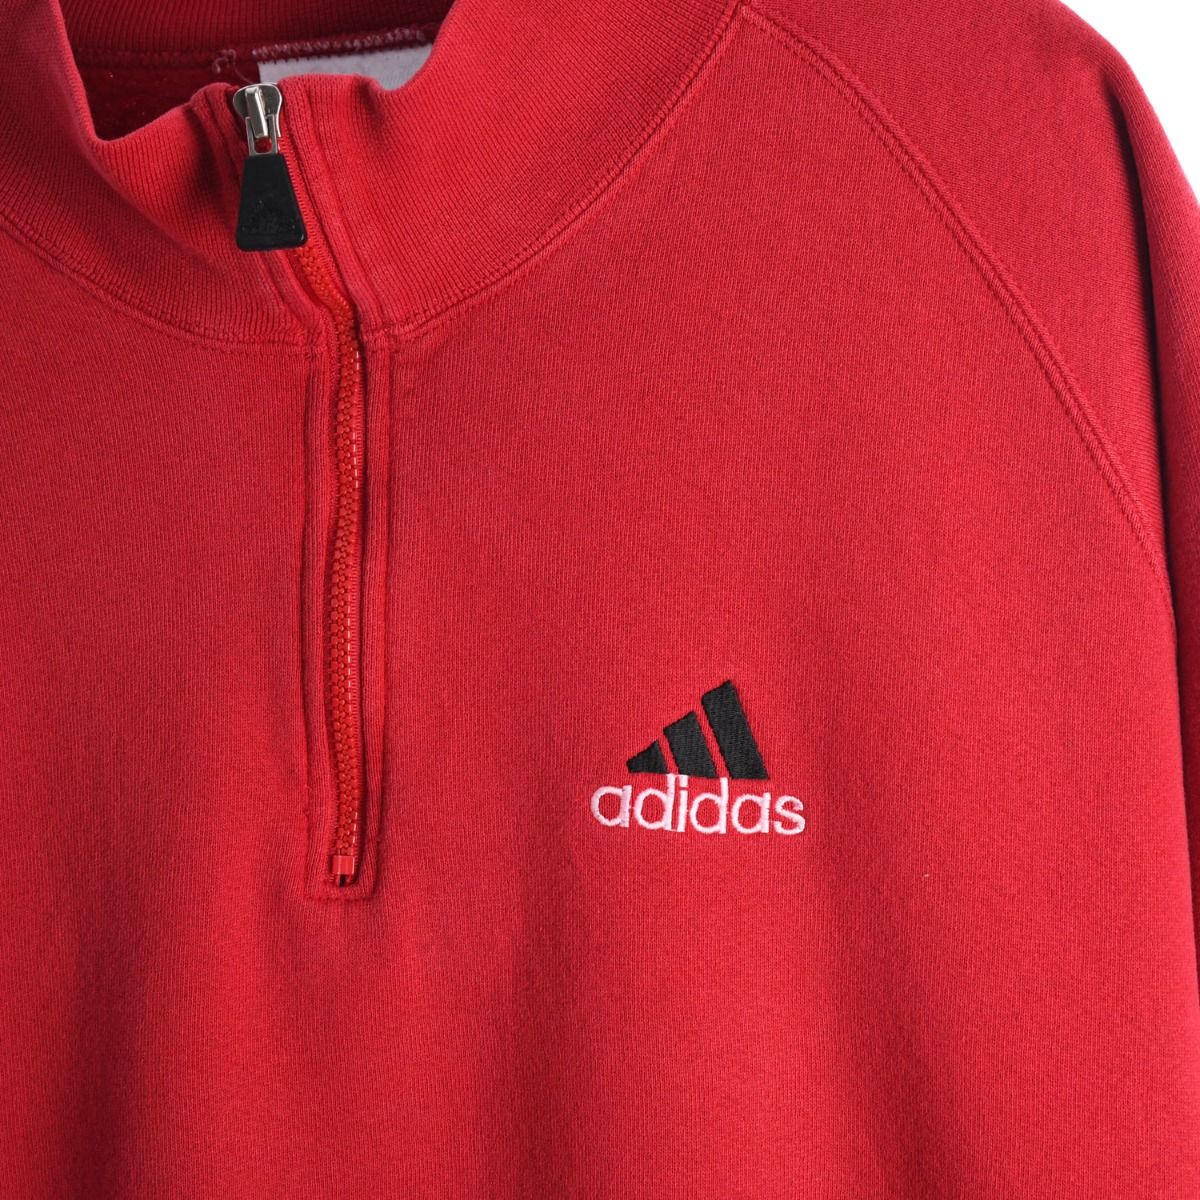 Adidas 1990s Quarter-Zip Sweatshirt